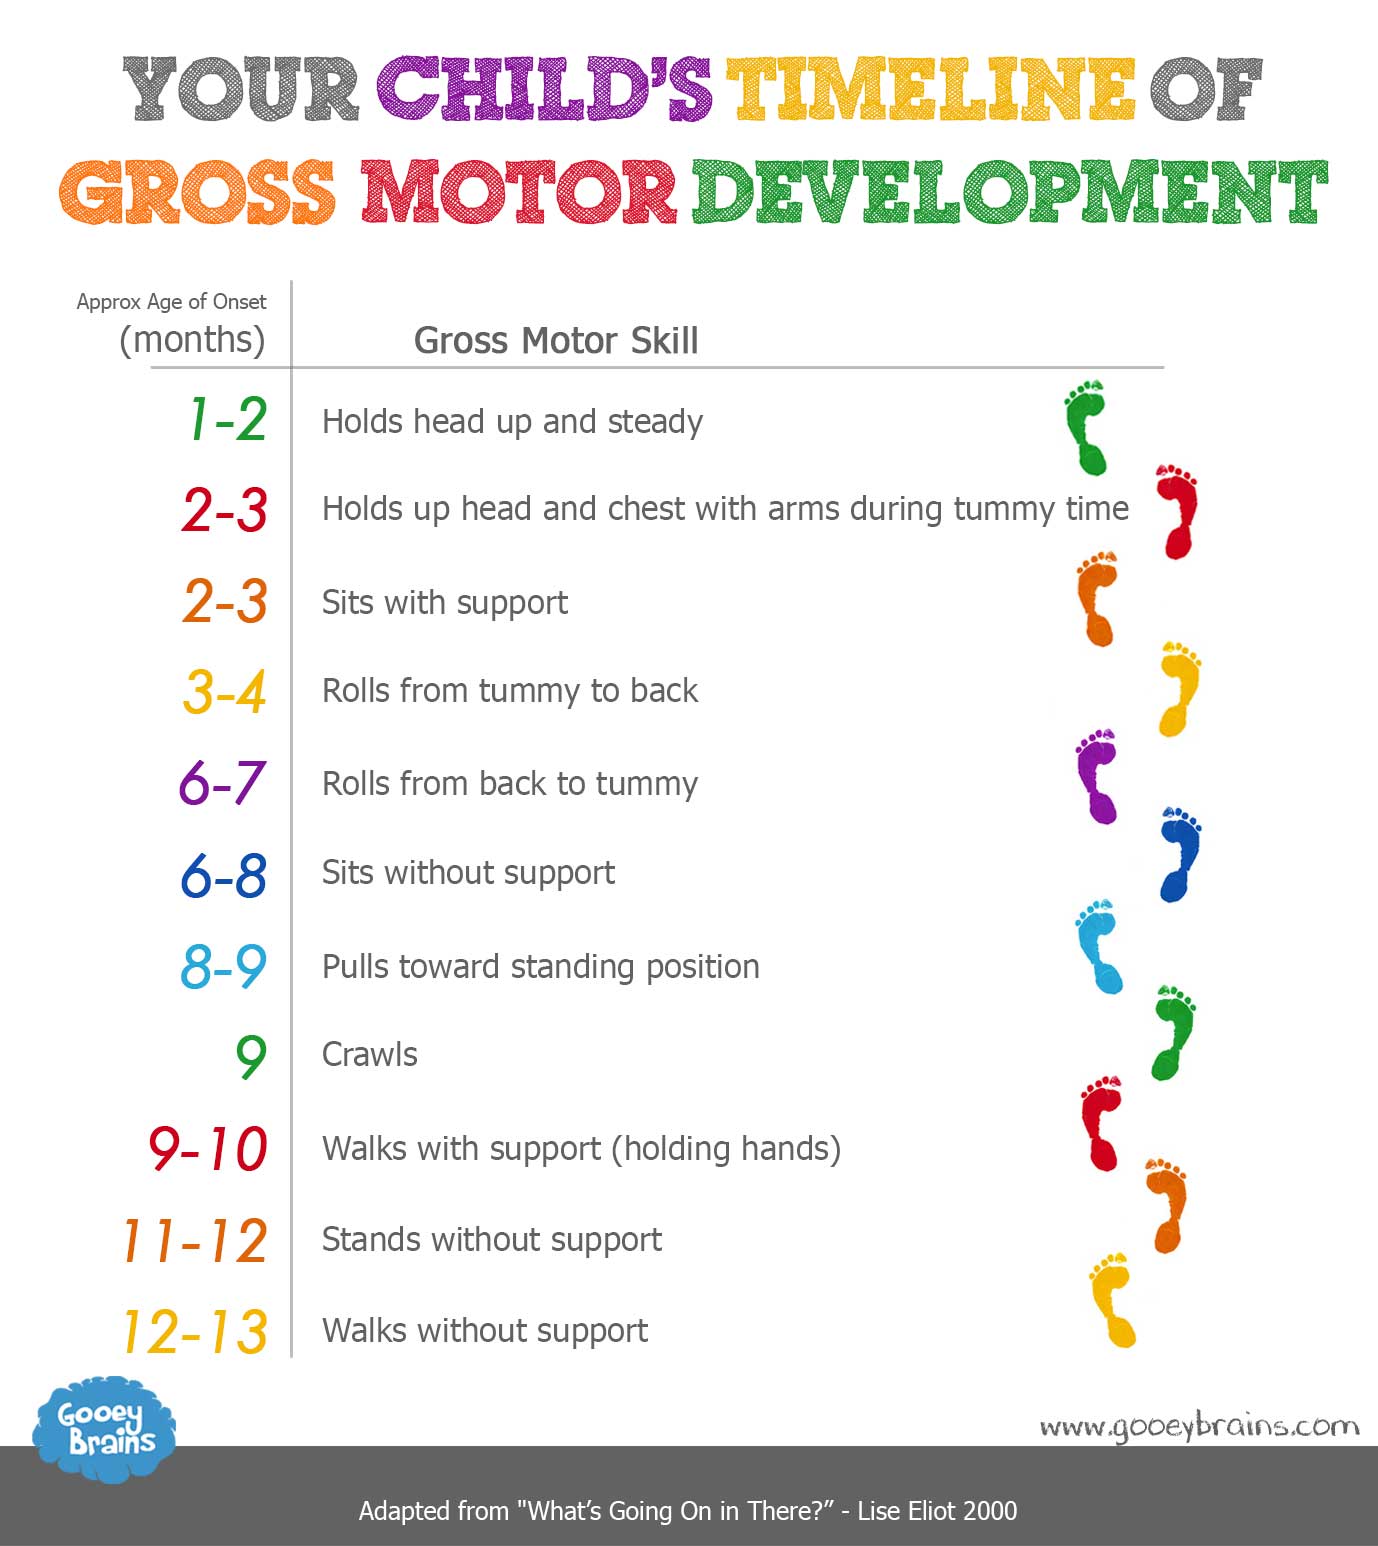 When Do Babies Develop Gross Motor Skills?